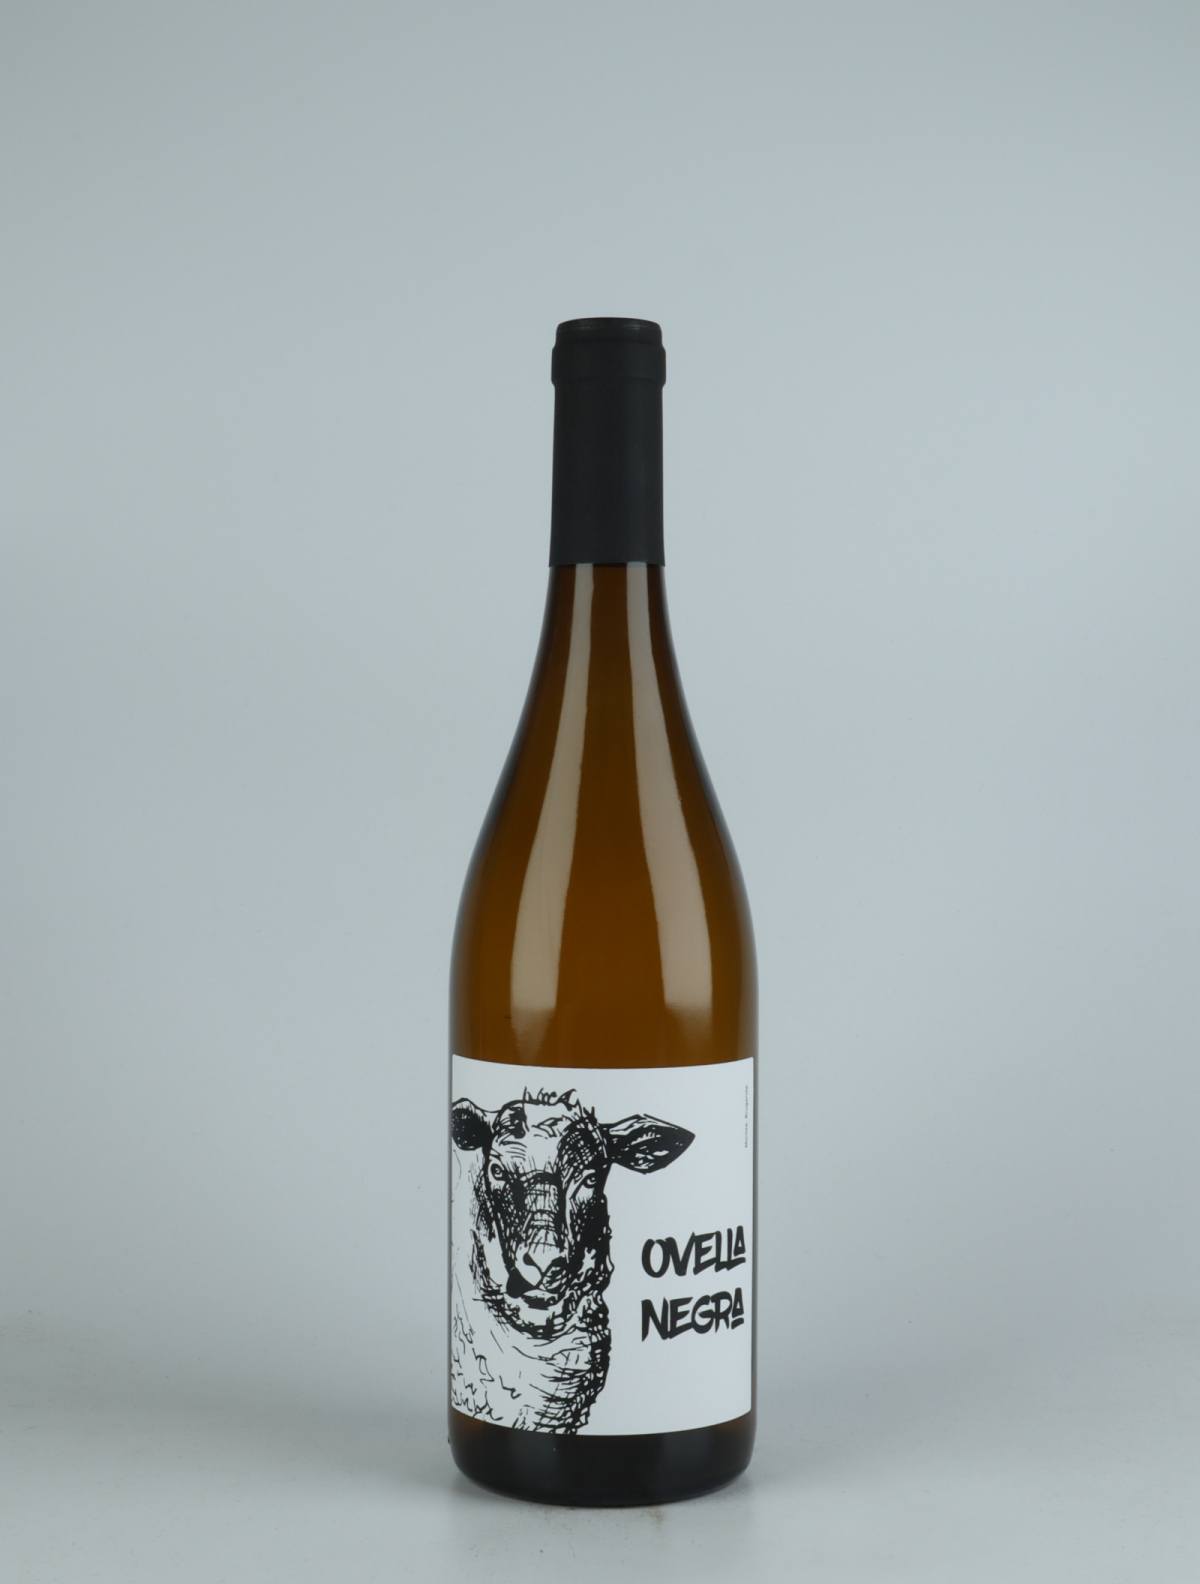 A bottle 2021 Ovella Negra Orange wine from Mas Candí, Penedès in Spain